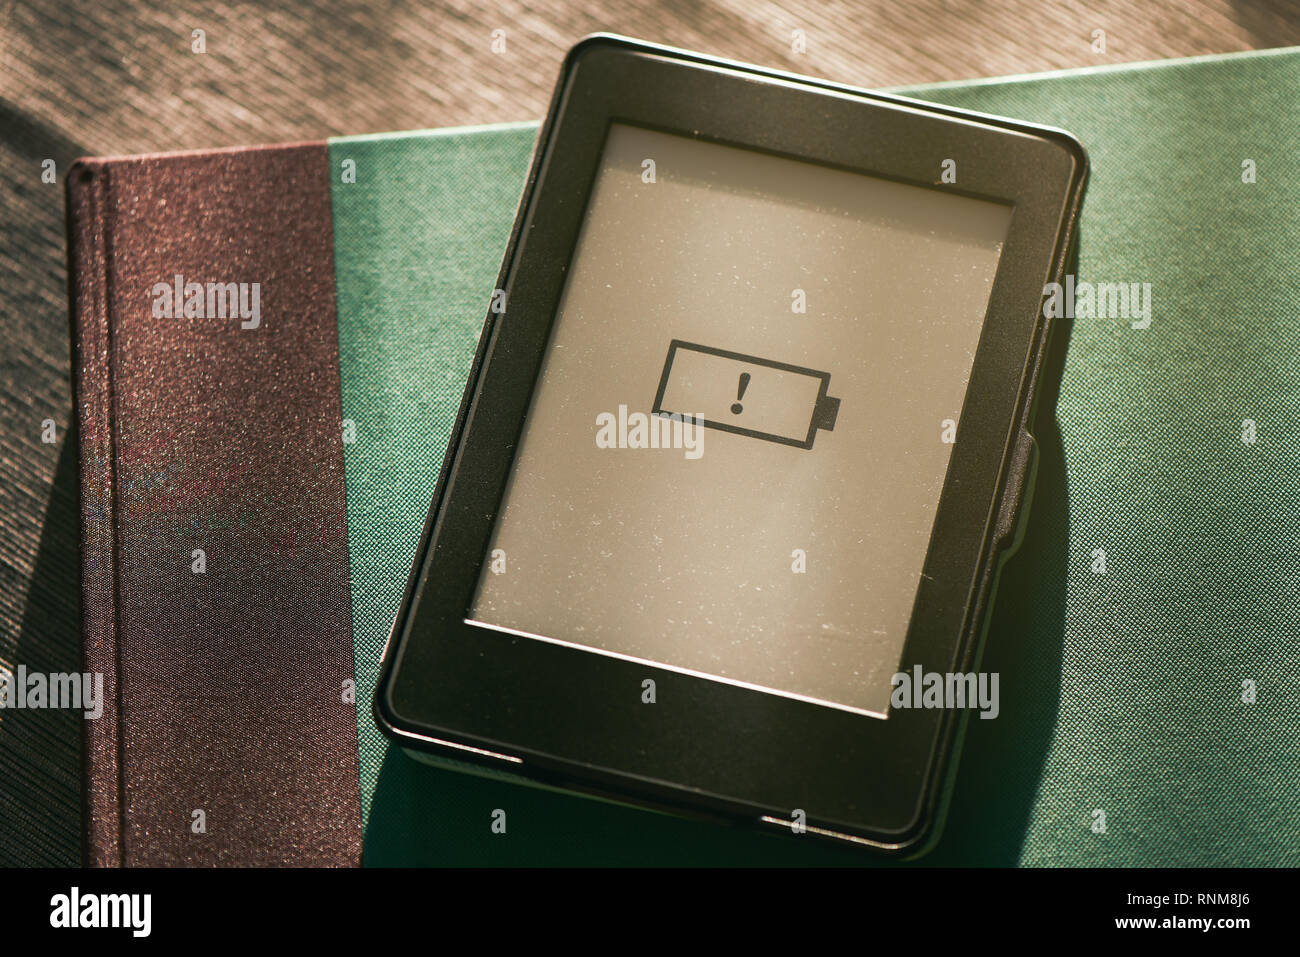 L'icône de batterie faible sur e-book e-reader avec écran soleil chaud Banque D'Images